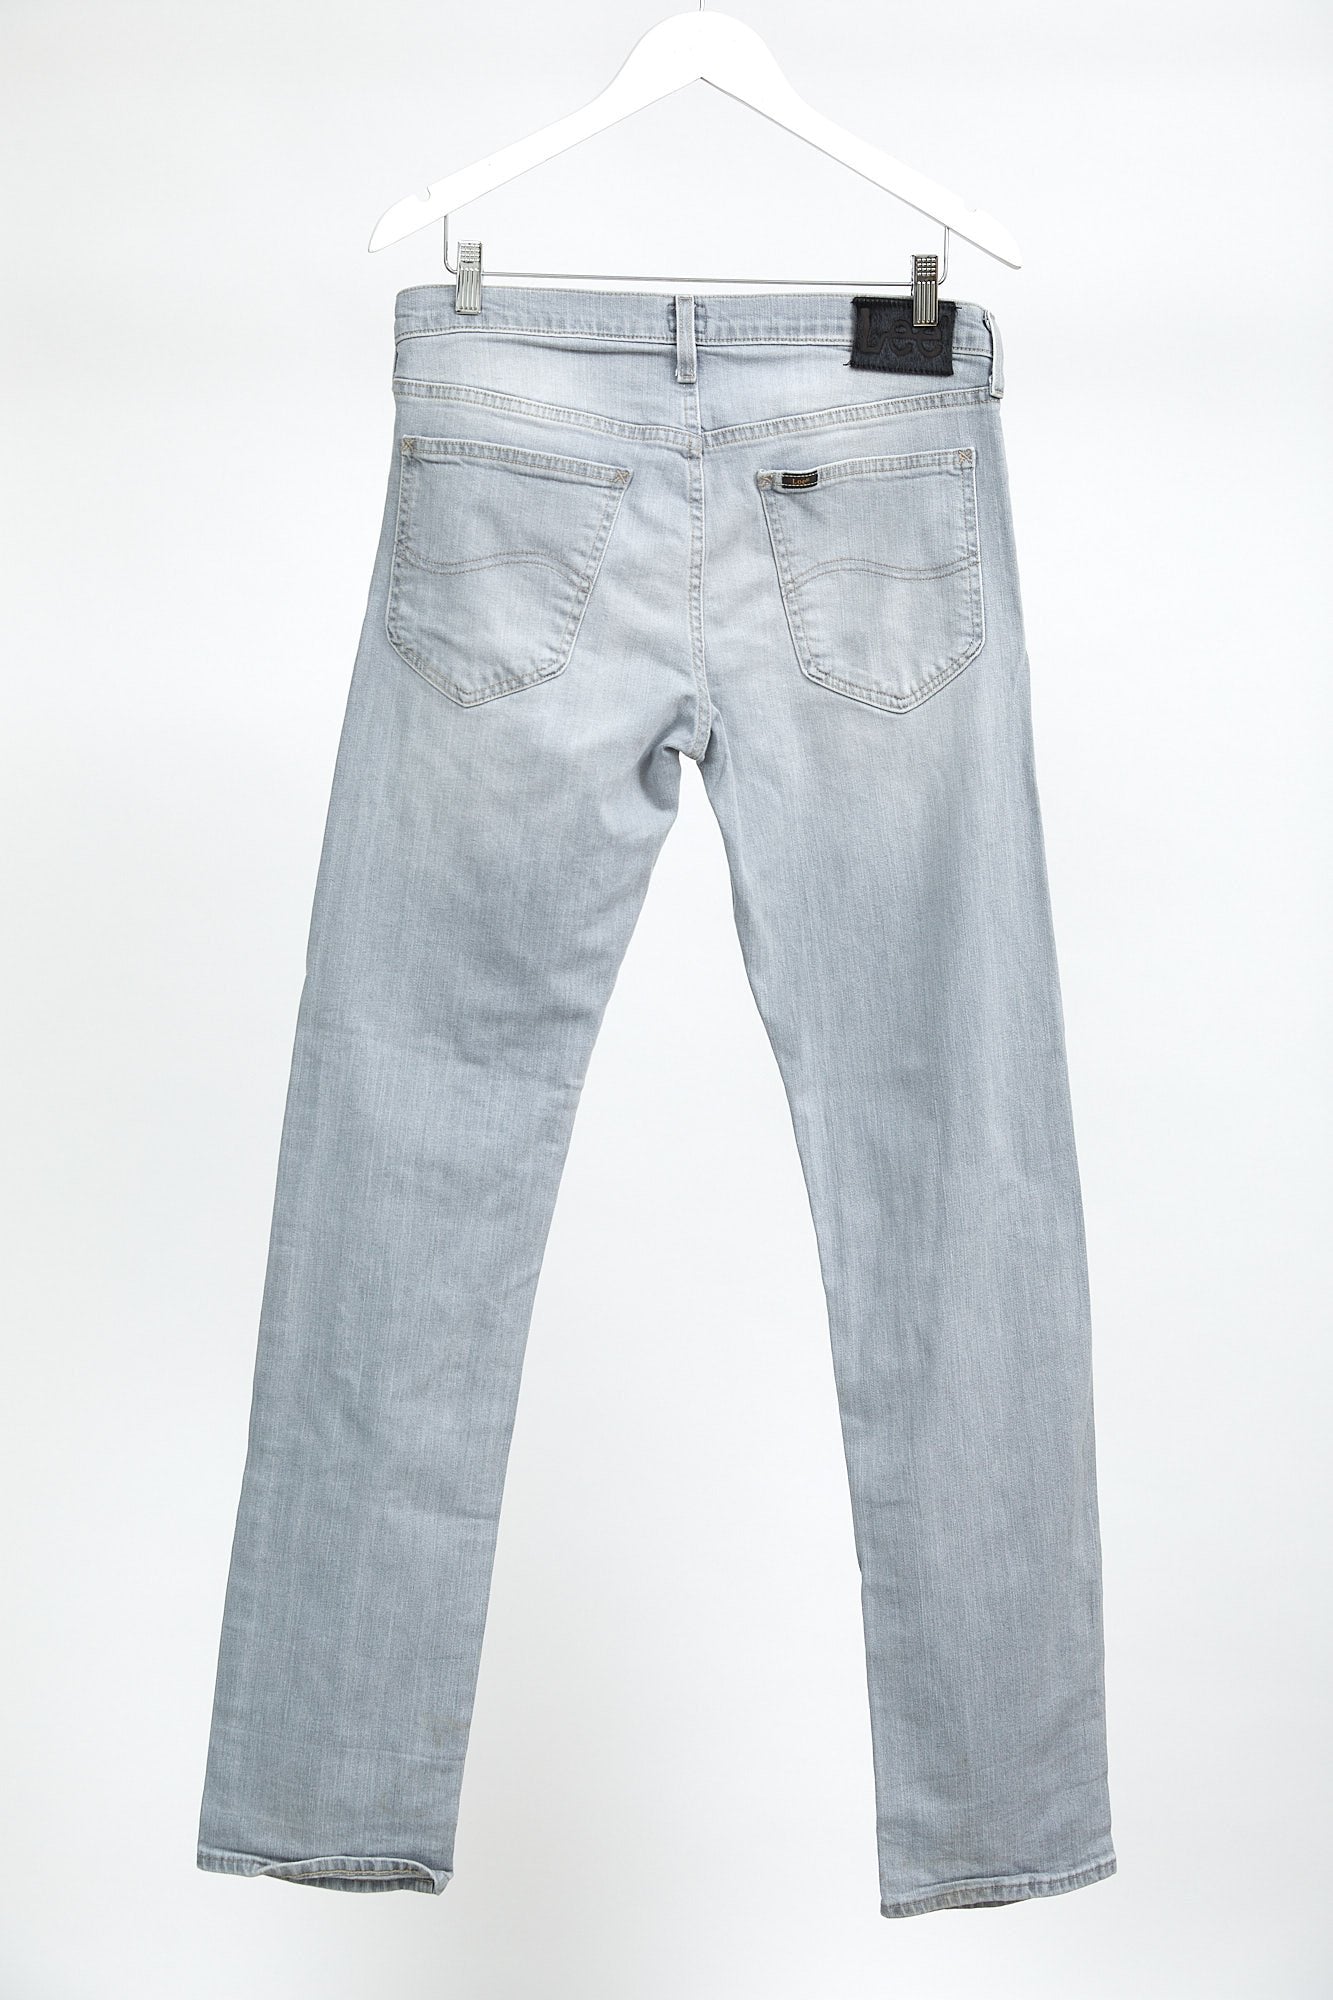 Lee Light Grey Slim Fit Jean: W32 L34